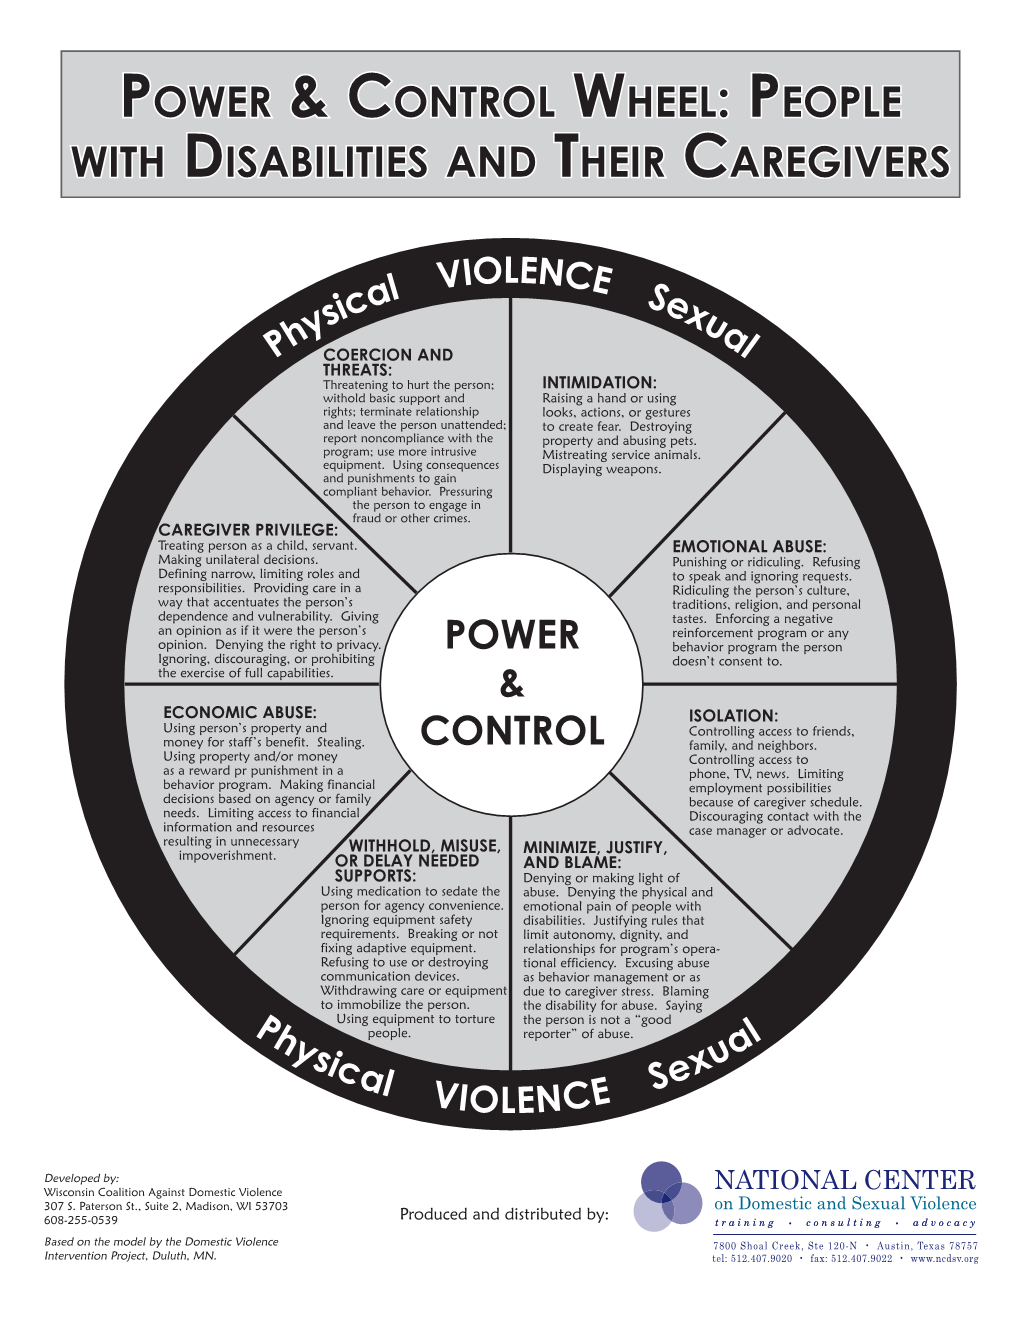 Disabled & Caregiver P&C Wheel